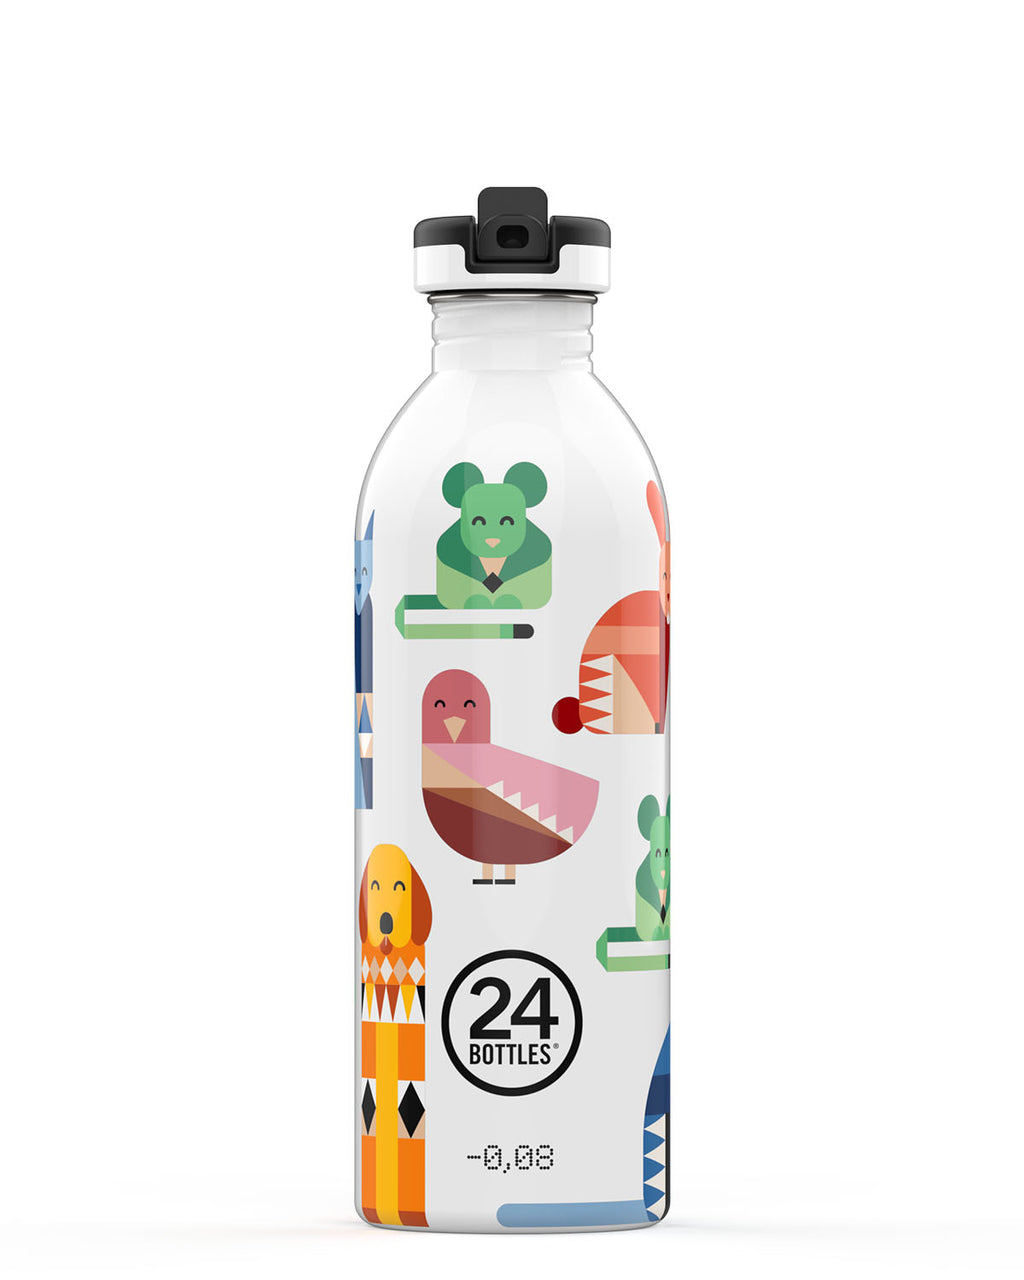 Gourde Enfant Inox Urban Bottle 250ml Sea Friends - 24Bottles – Hersée